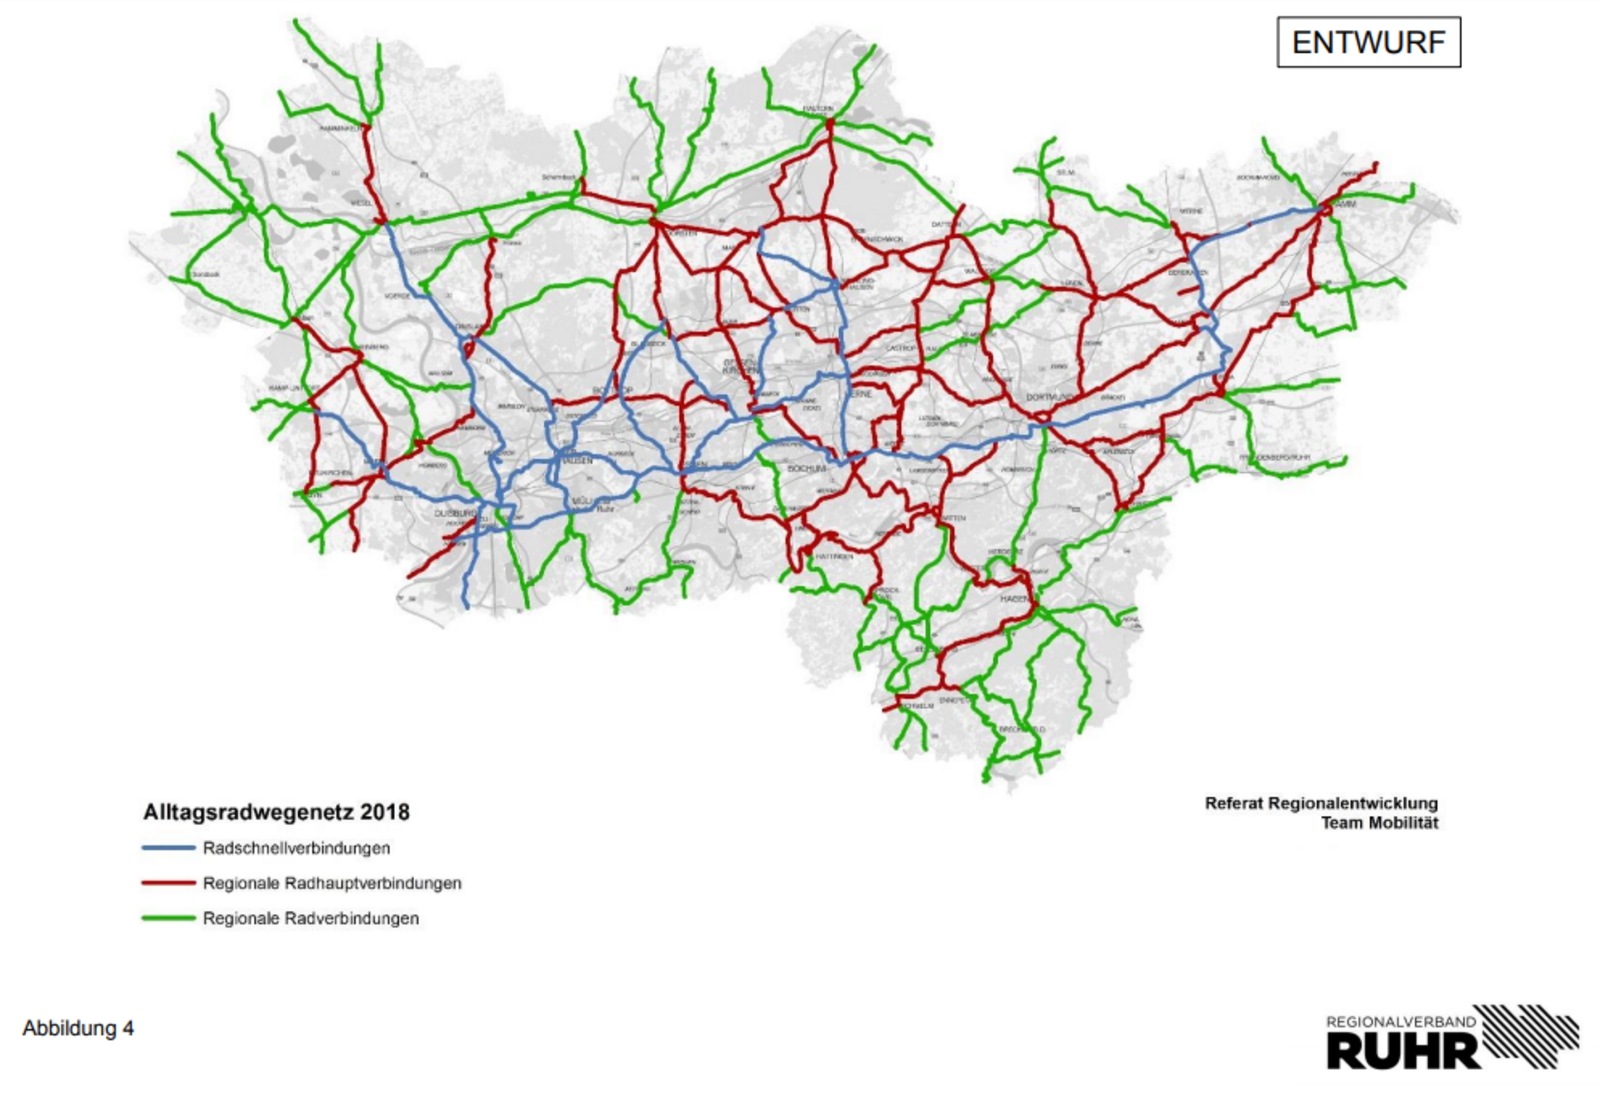 Karte - Regionales Radwegenetz mit Hierarchie. Abb. RVR